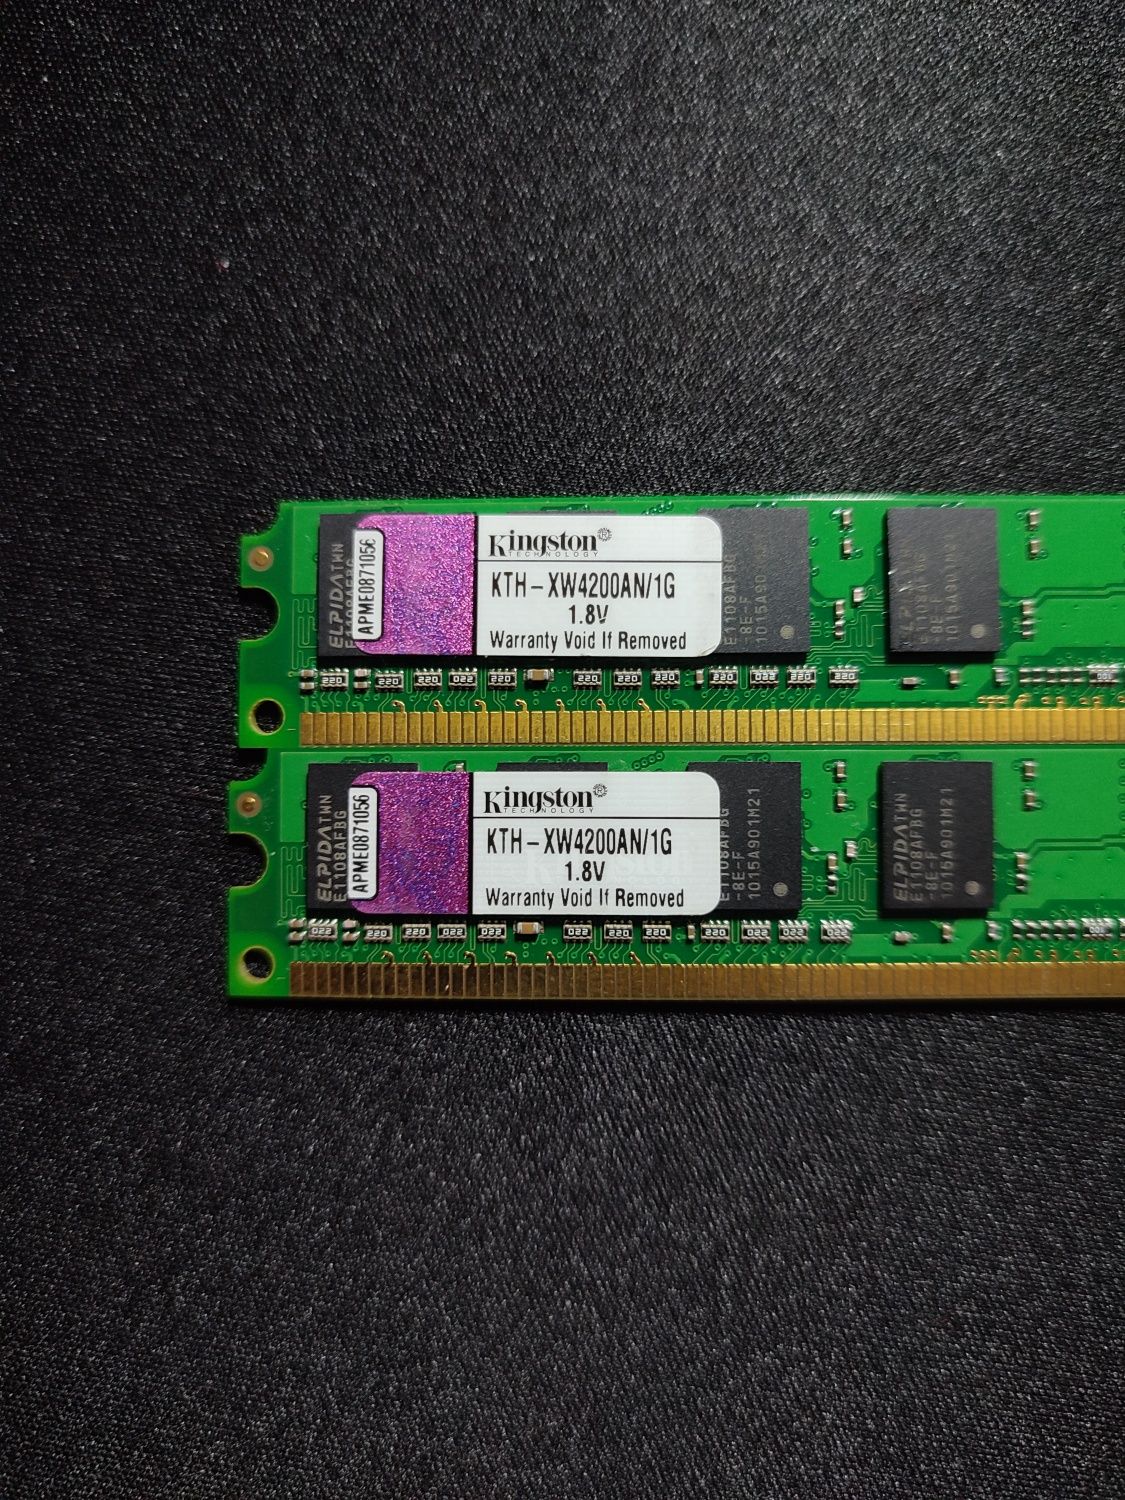 Memorie PC Kingston 1G
DDR2, pin: 9905431-017.A00LF
40 ron